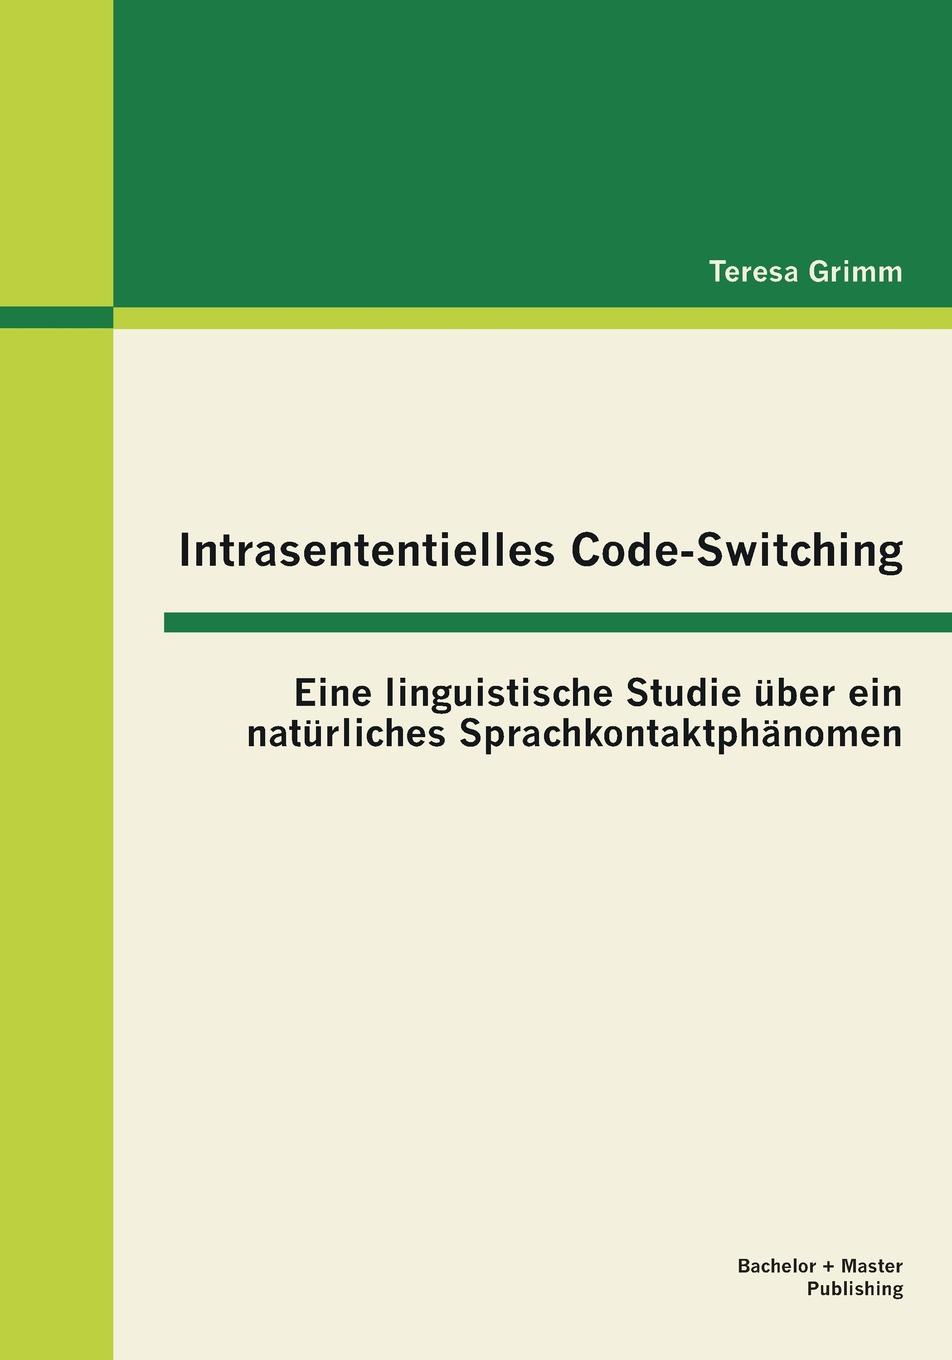 Intrasententielles Code-Switching. Eine Linguistische Studie Uber Ein Naturliches Sprachkontaktphanomen